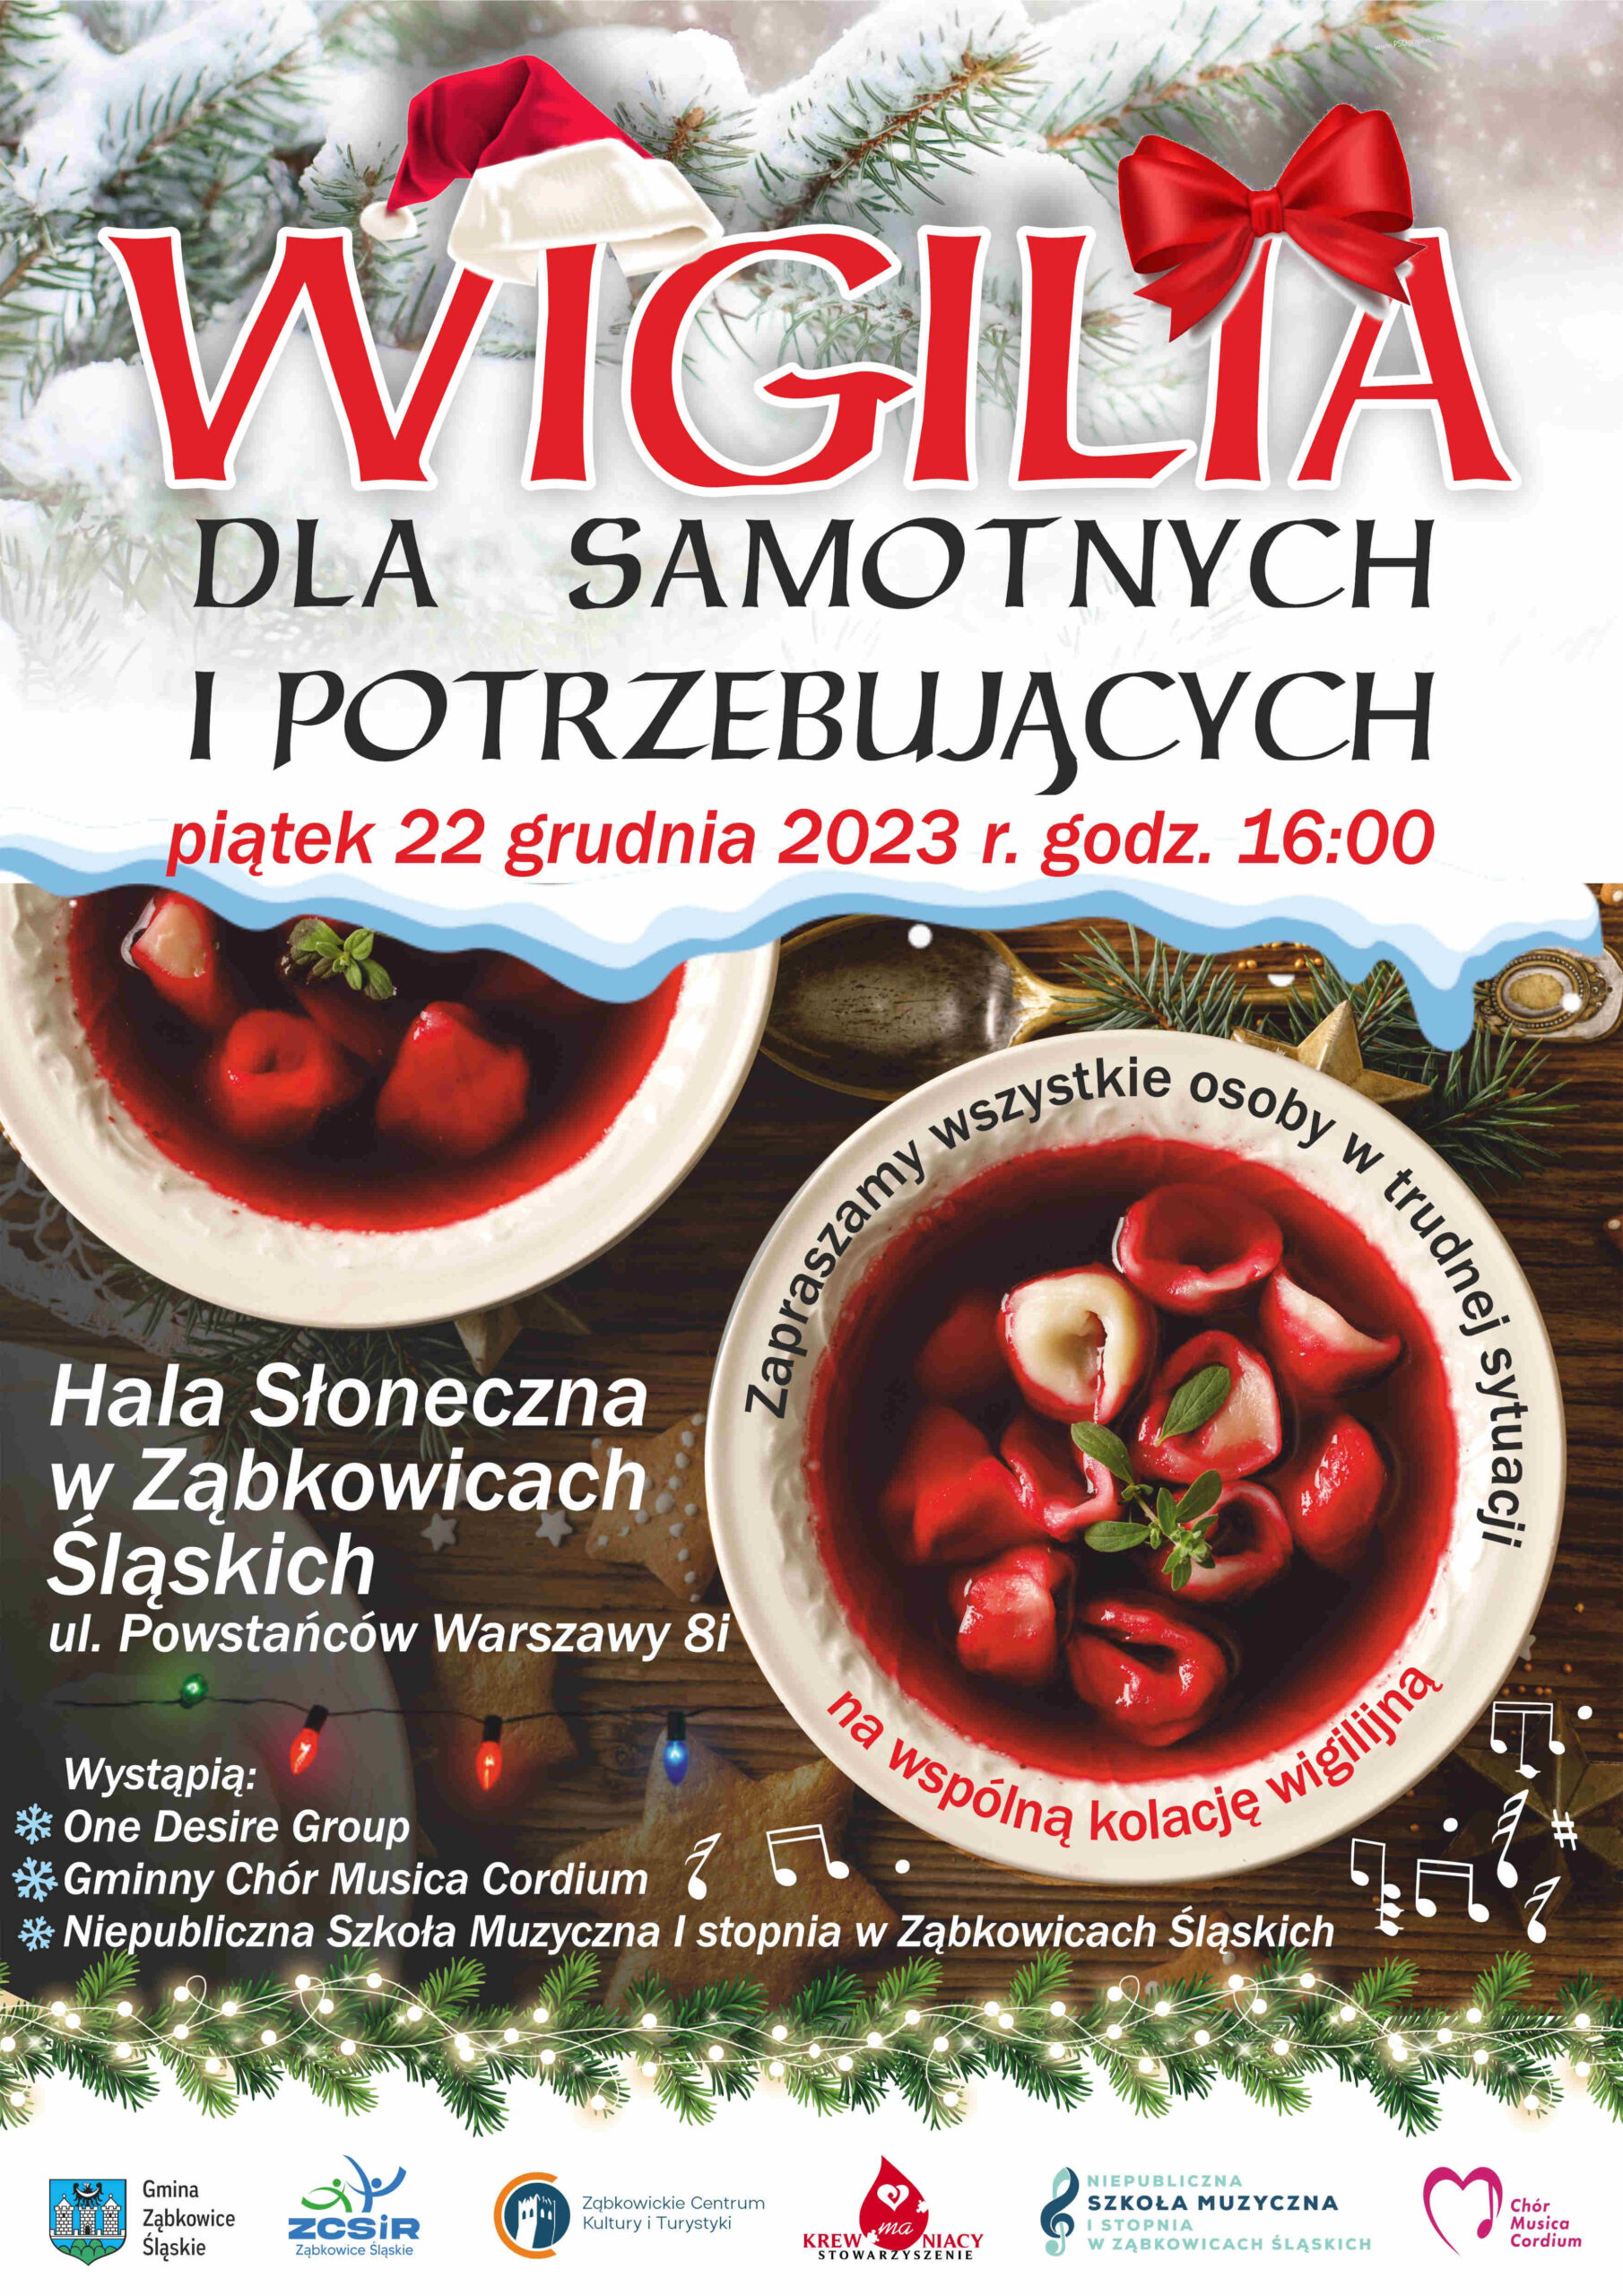 Plakat informacyjny o Wigilii dla samotnych i potrzebujących 22 grudnia 2023 roku o godzinie 16:00 w Ząbkowicach Śląskich. Na tle stół wigilijny z barszczem i uszkami na białych talerzach.